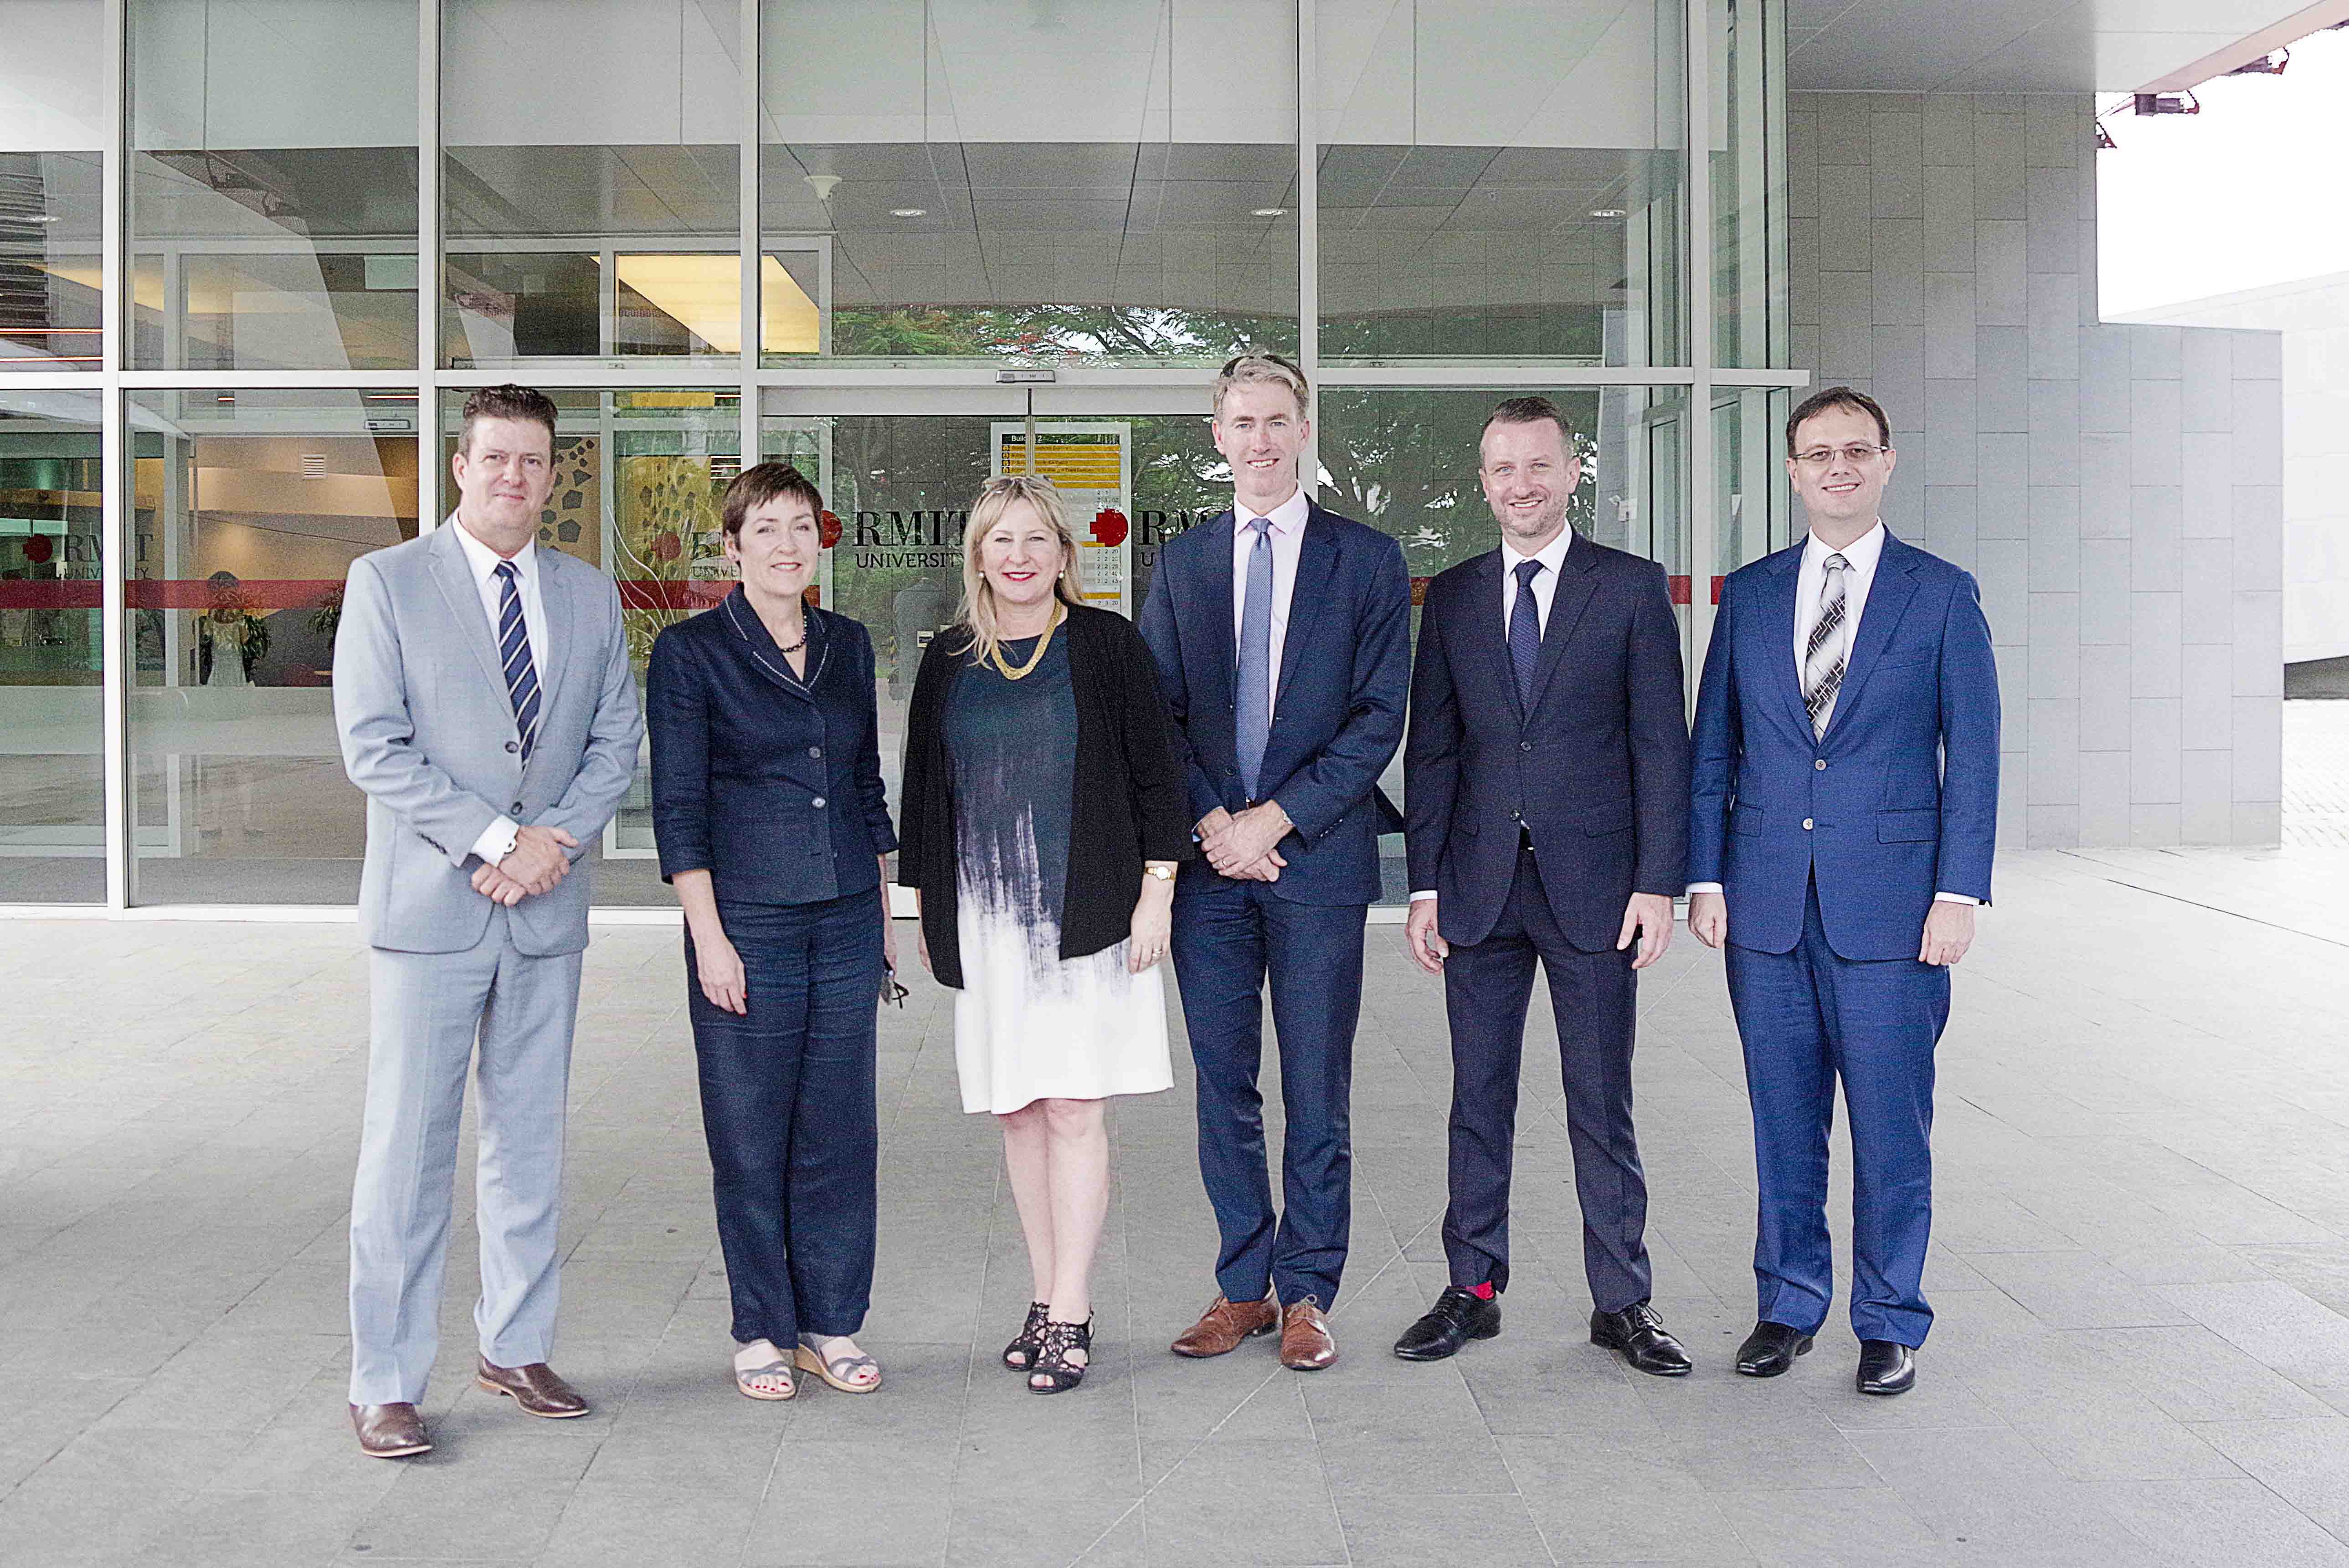 Bộ trưởng Bộ Giáo dục bậc đại học và Bộ Đào tạo và Kỹ năng bang Victoria (Úc) bà Gayle Tierney vừa viếng thăm cơ sở Nam Sài Gòn, Đại học RMIT Việt Nam chiều ngày 12/6/2019.